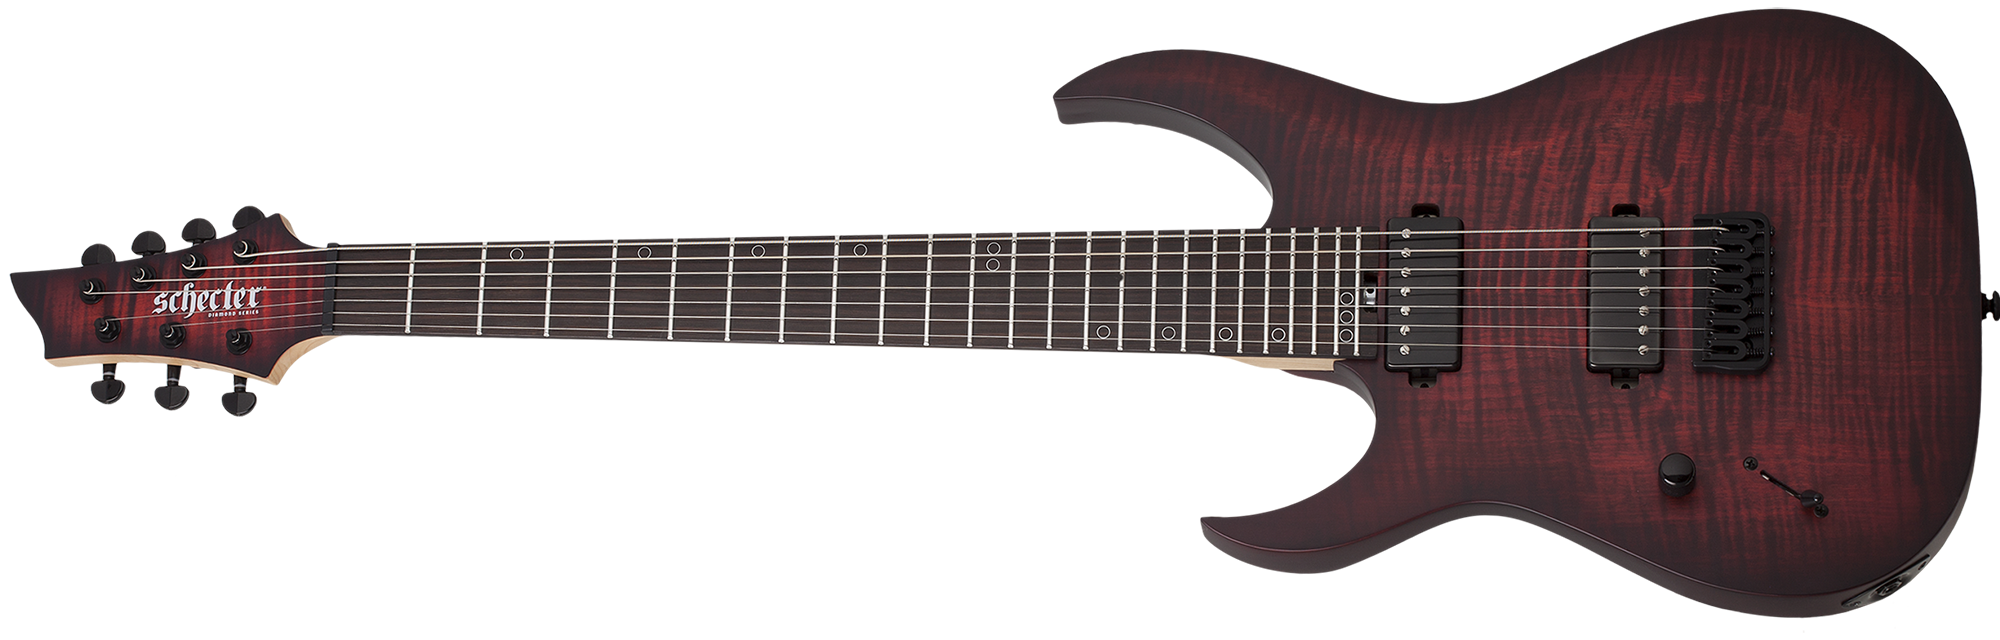 Schecter Sunset-7 Extreme 7 String Left Handed Electric Guitar, Satin Scarlet Burst 2577-SHC